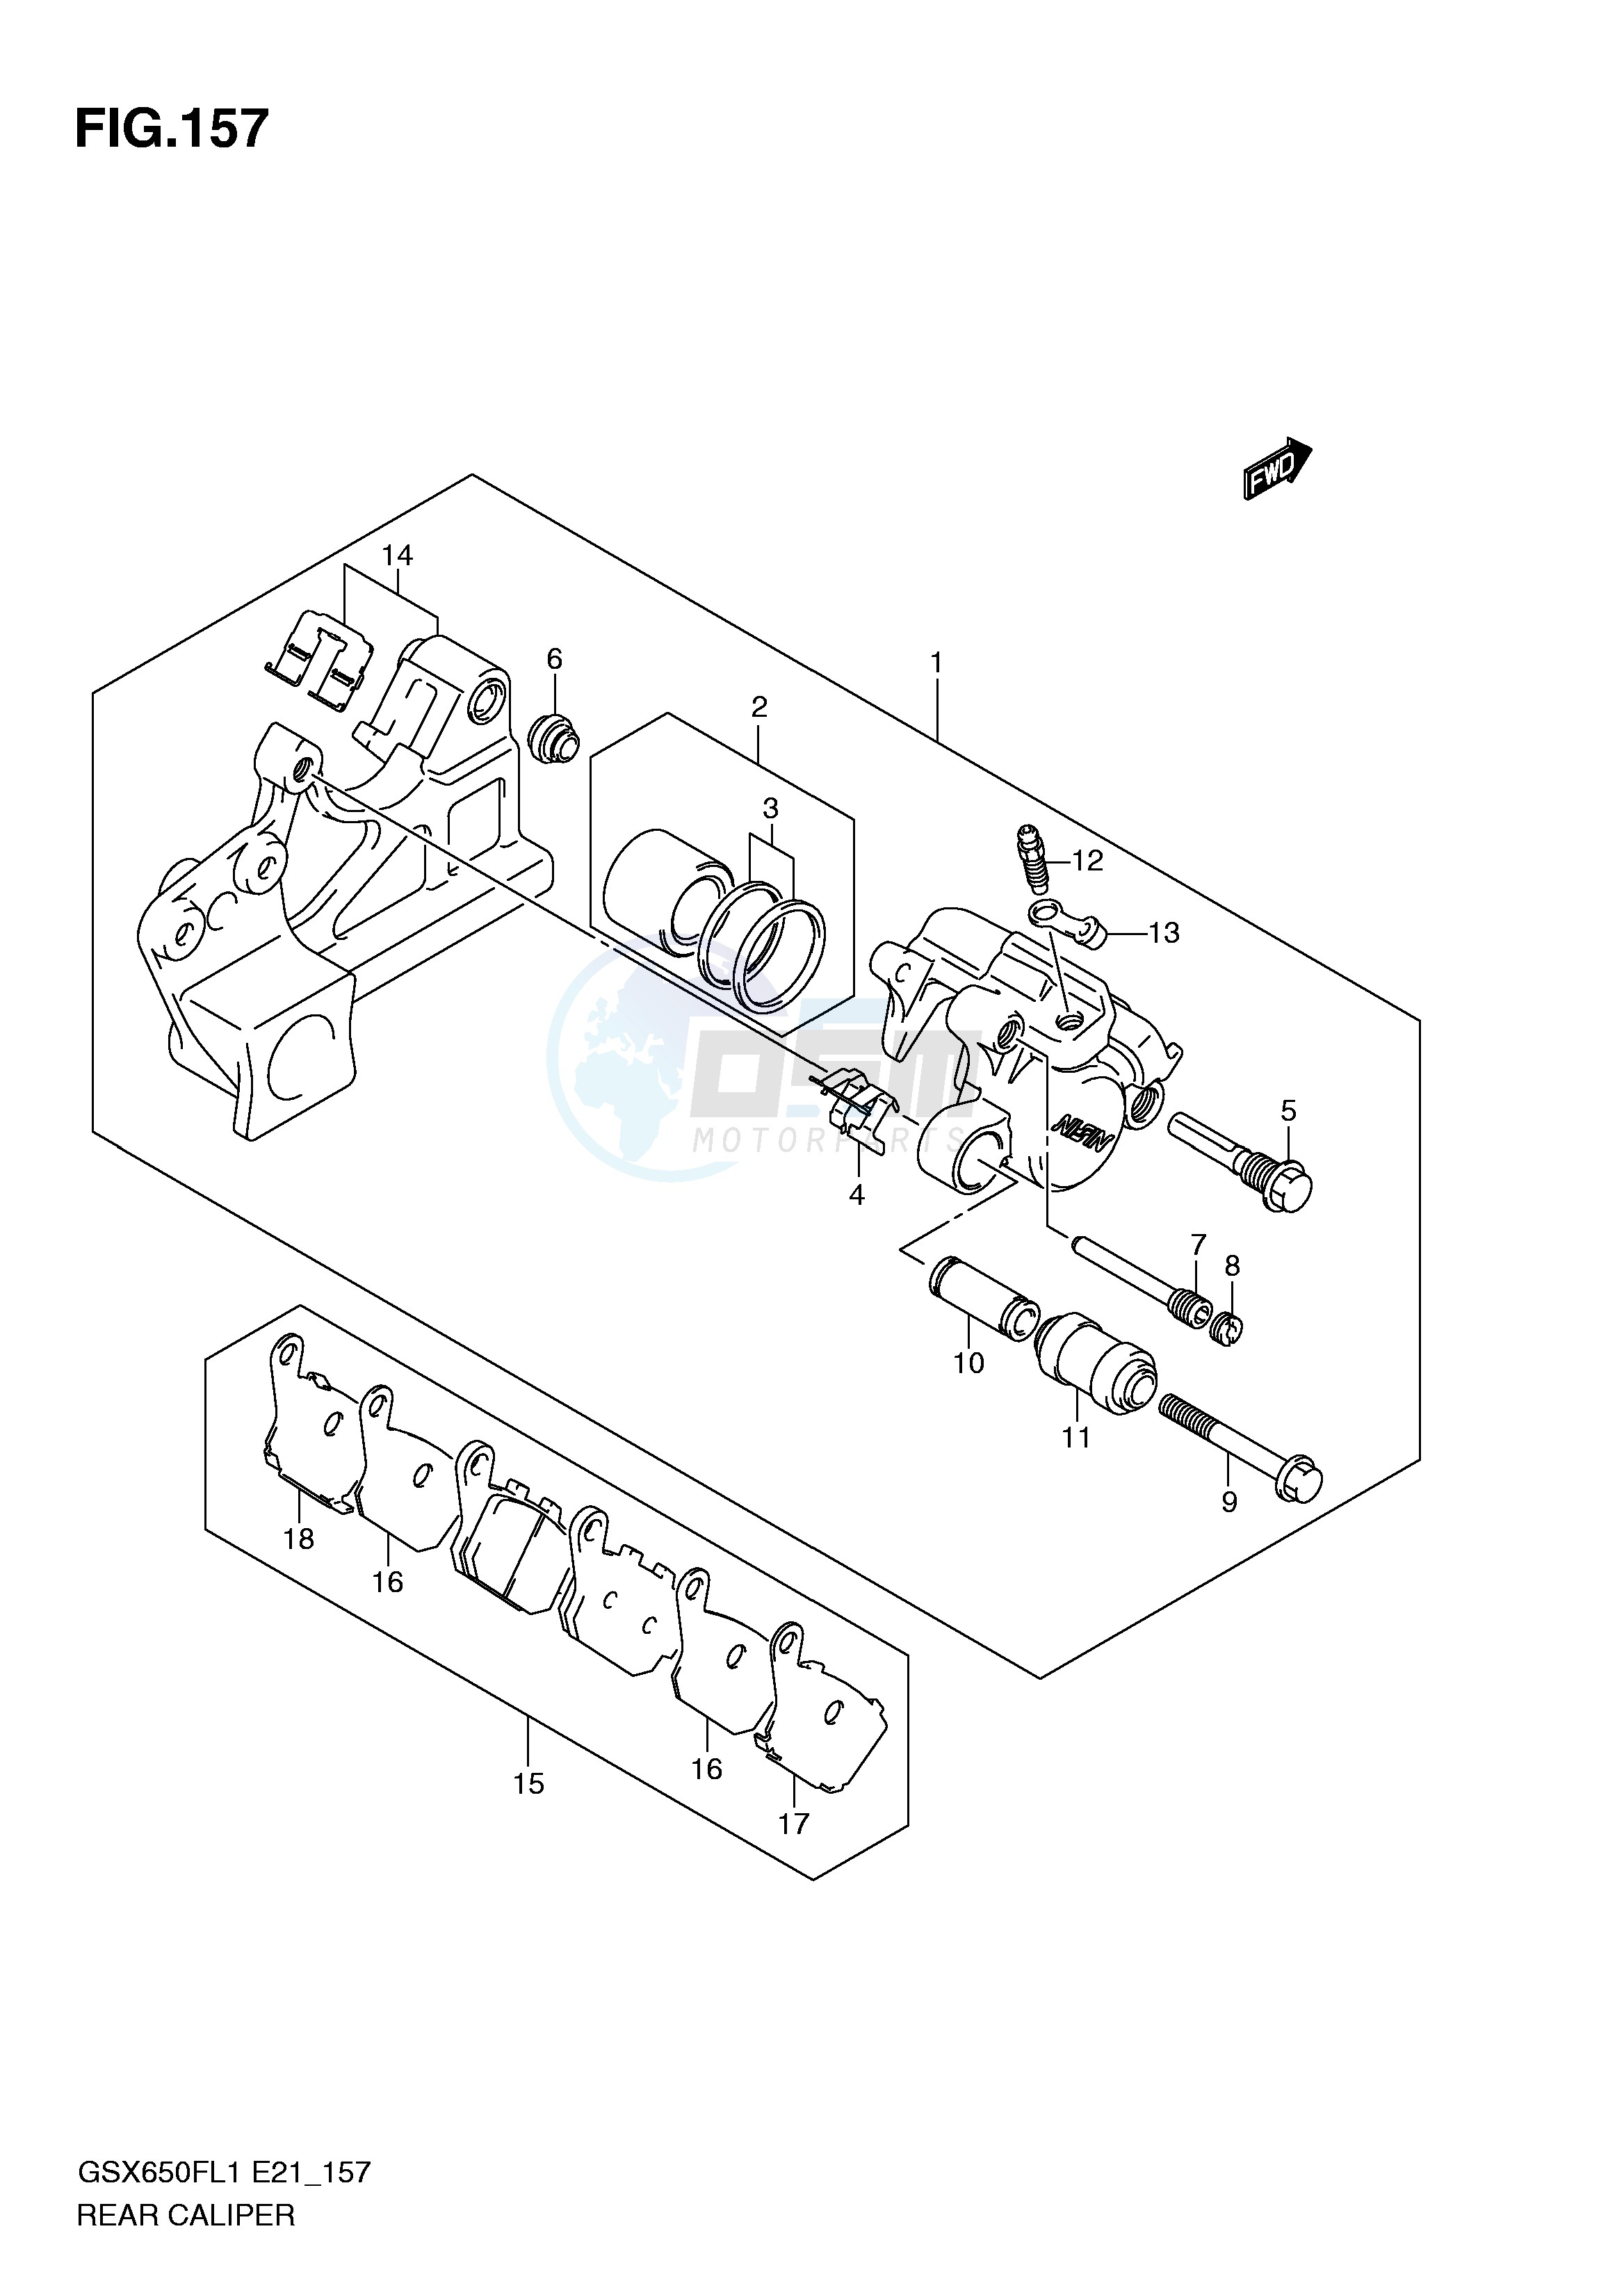 REAR CALIPER (GSX650FUAL1 E21) blueprint